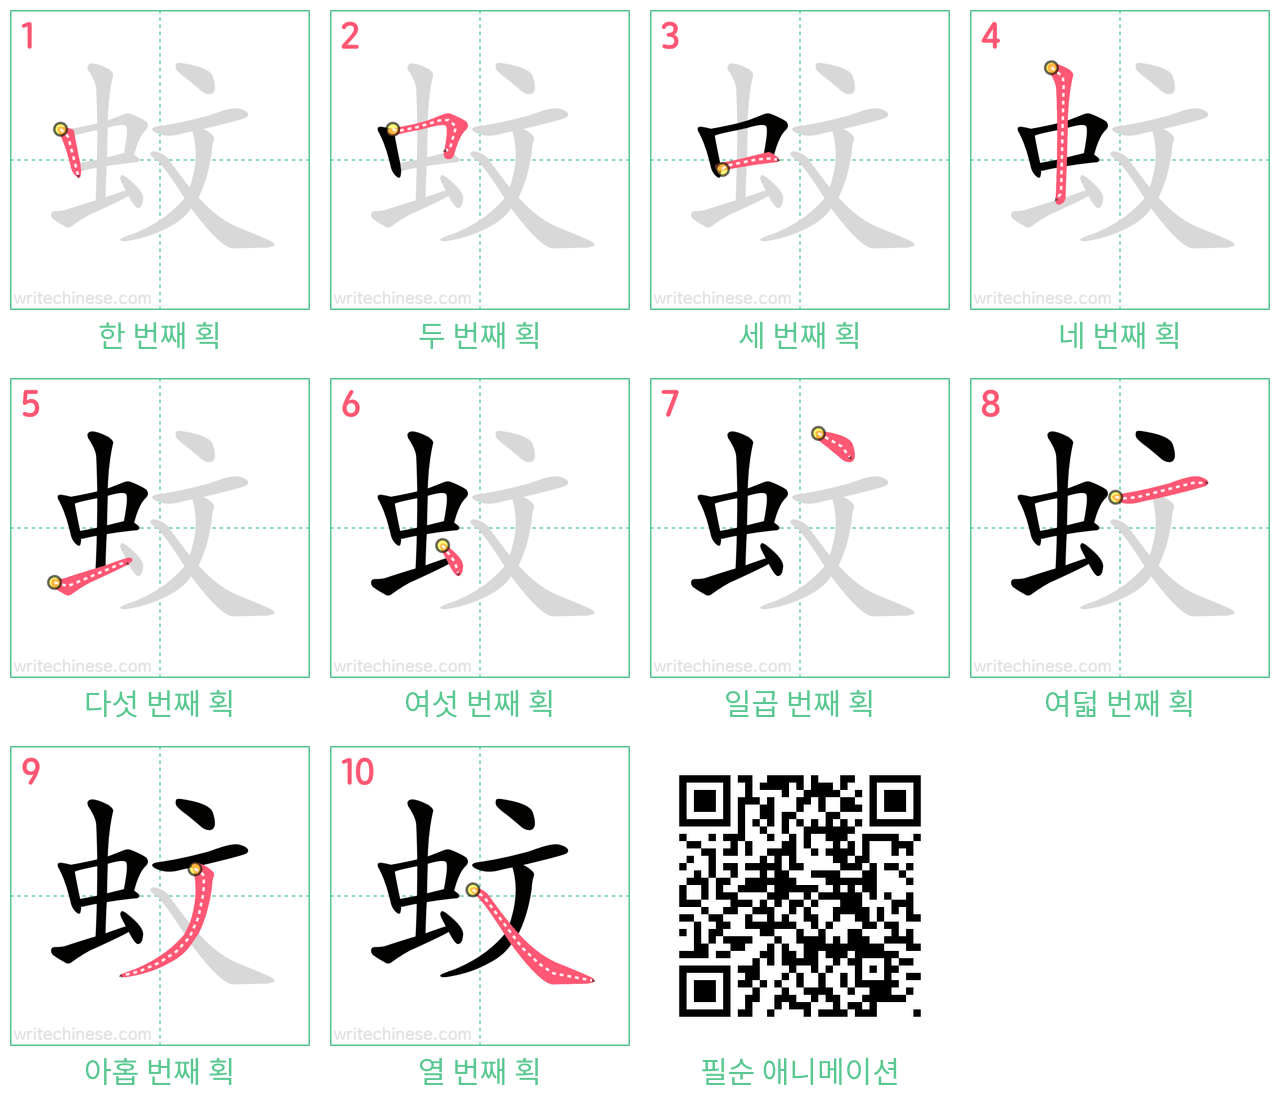 蚊 step-by-step stroke order diagrams